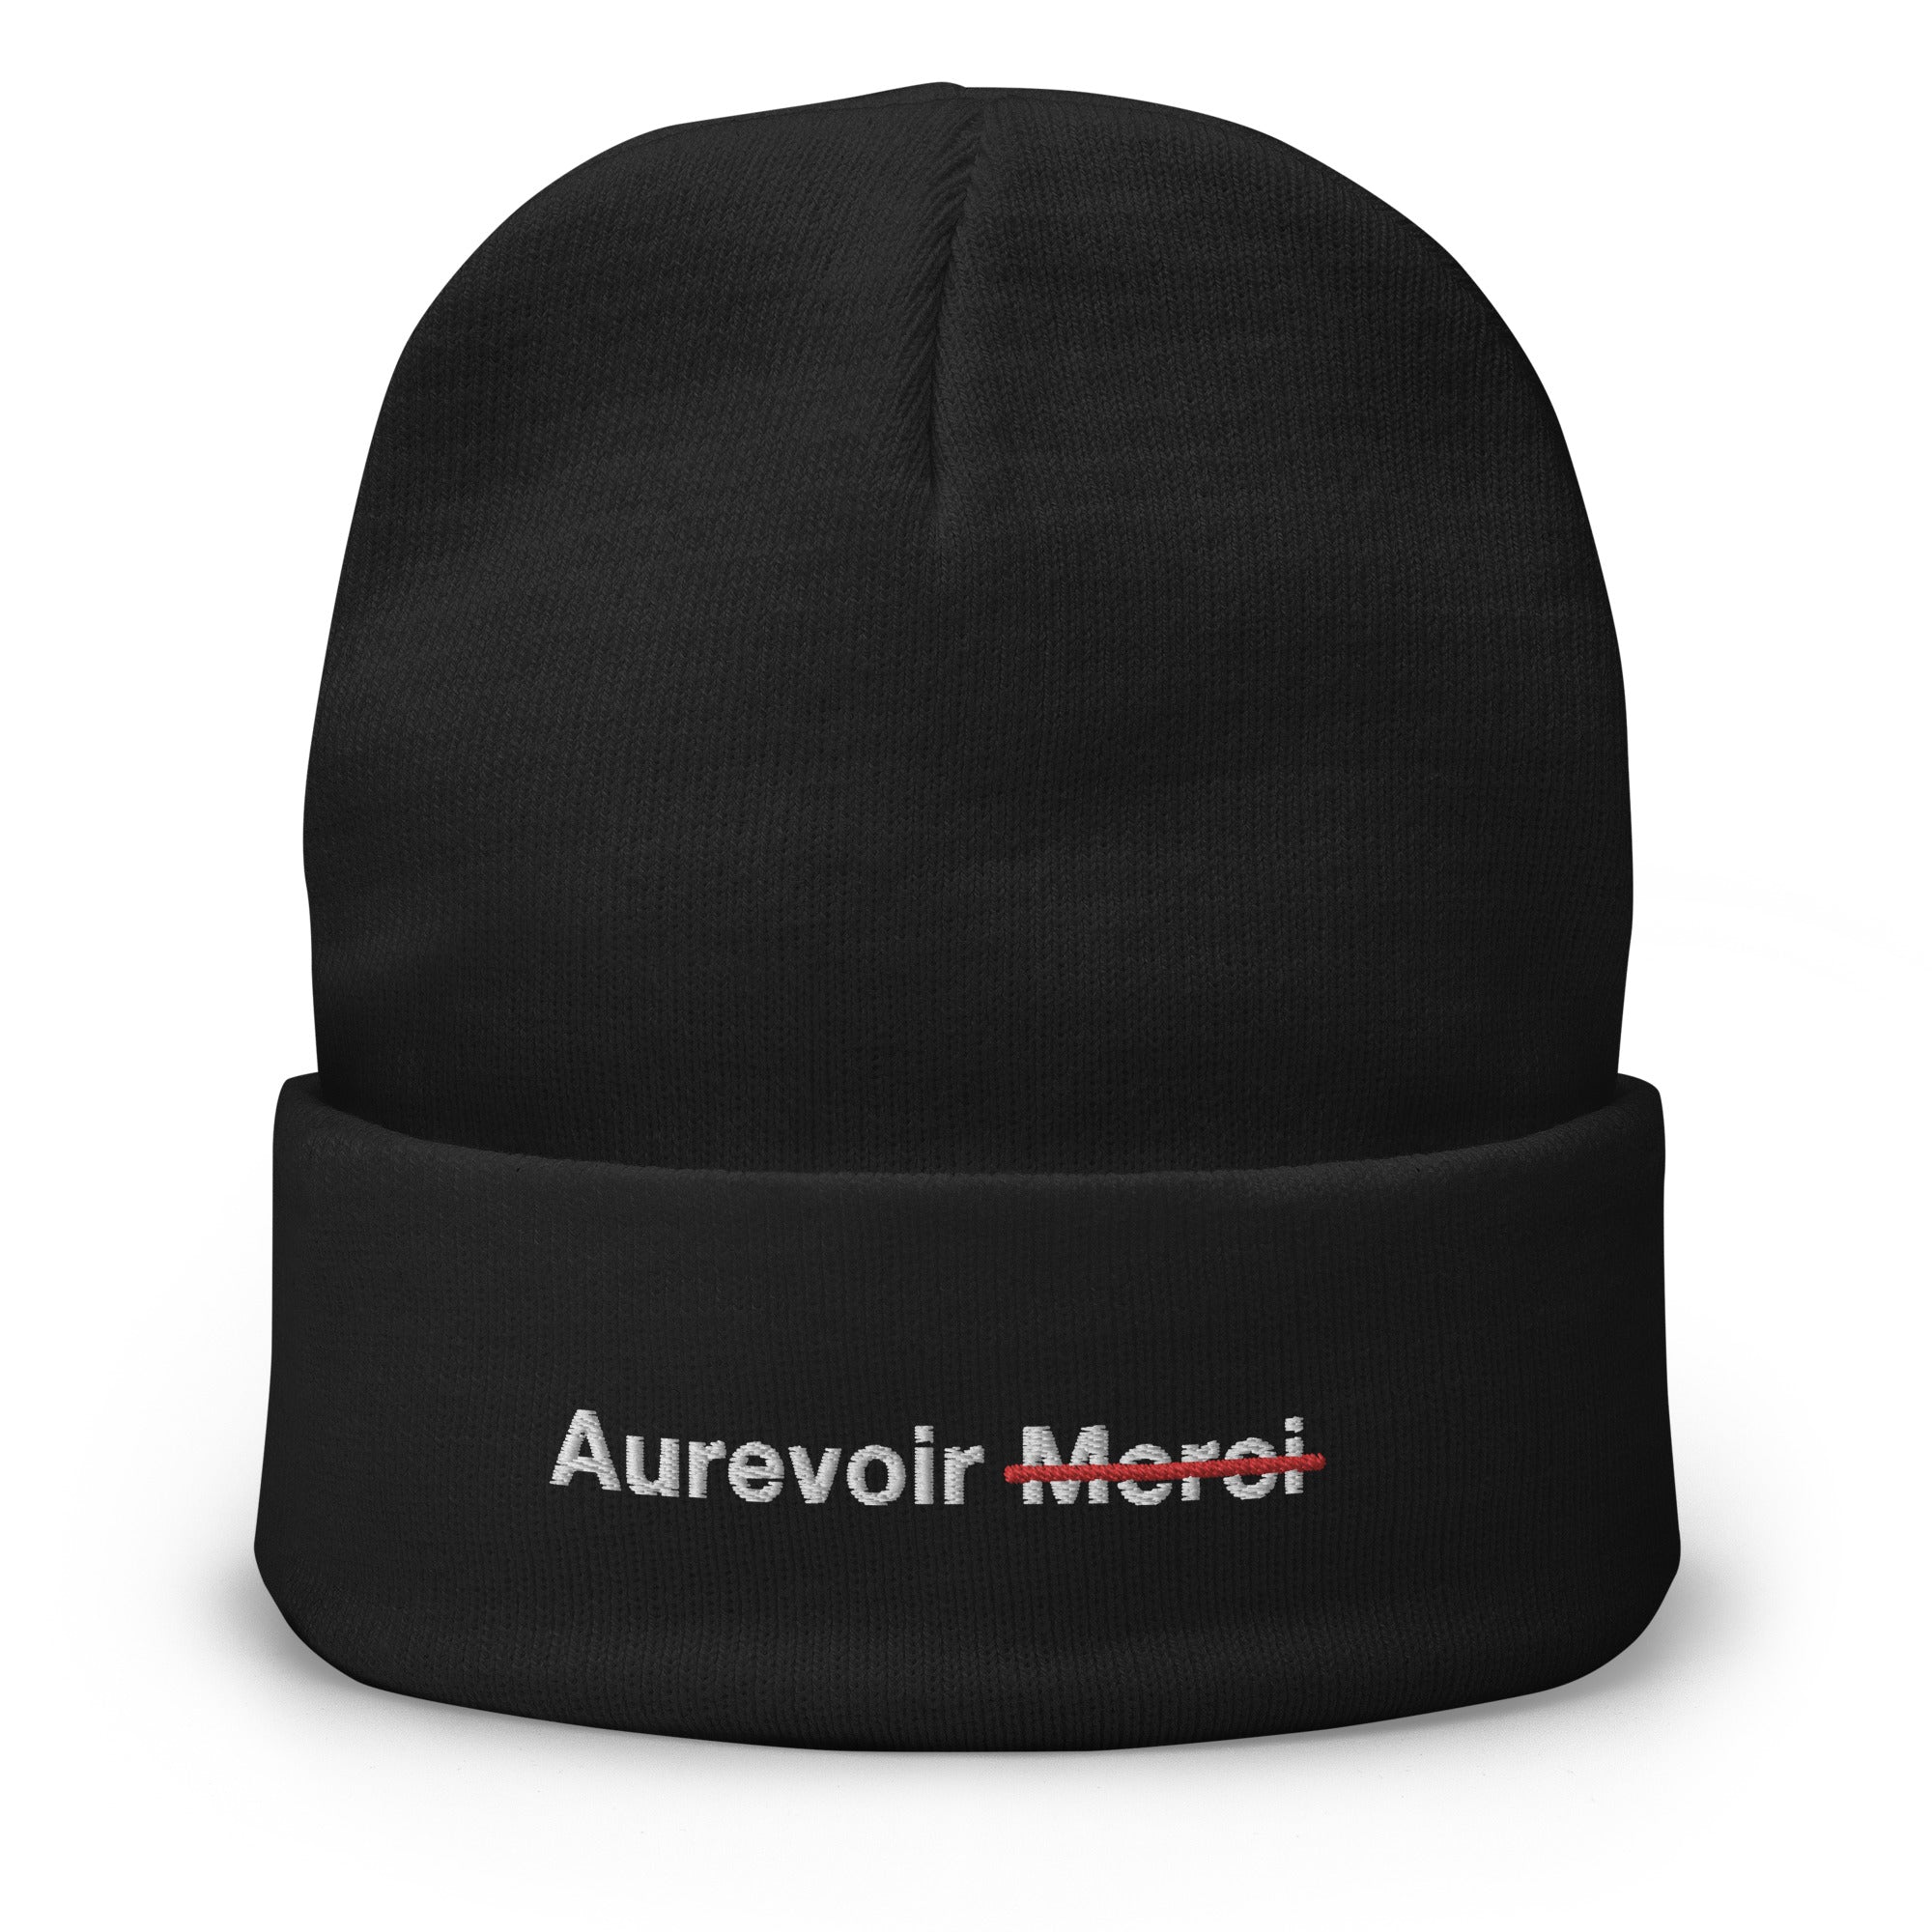 Geborduurde hoed met het opschrift "AUREVOIR MERCI"